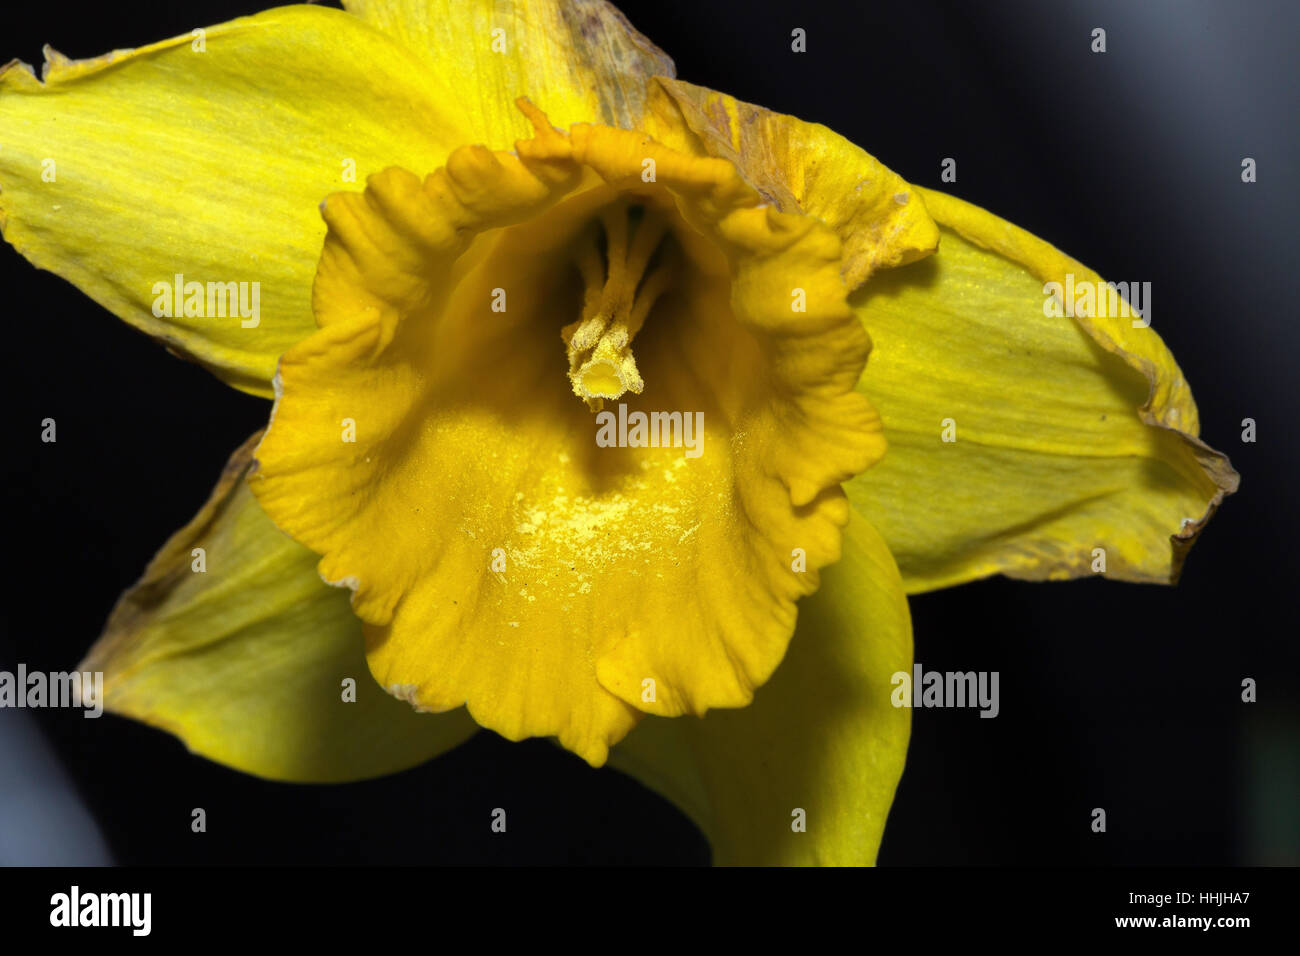 Single weathered yellow daffodil, close-up Stock Photo